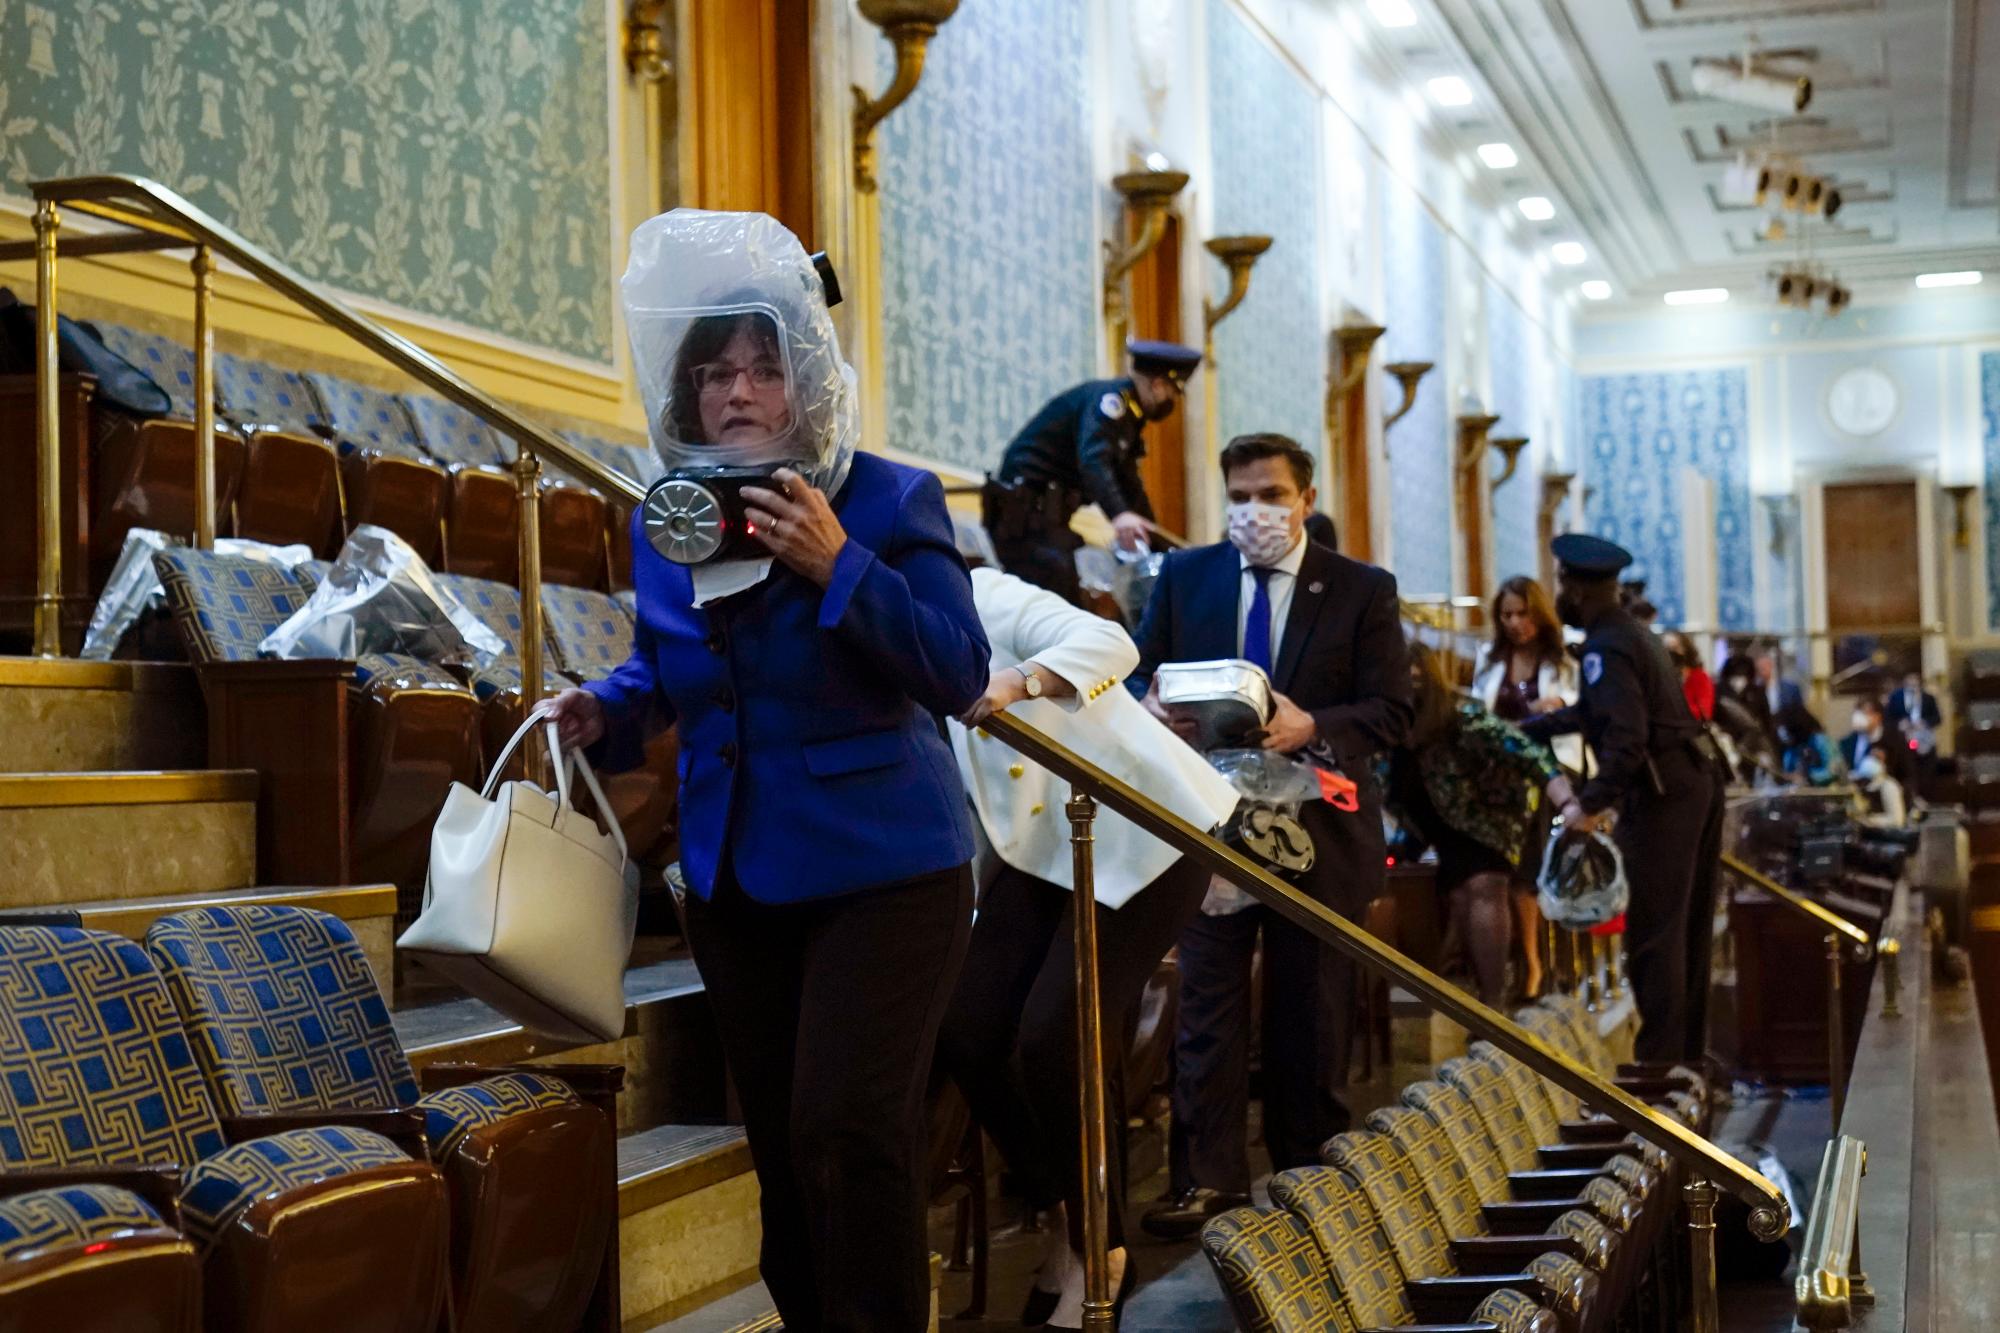 Personas se refugian en la galería de la Cámara mientras los manifestantes intentan irrumpir en la Cámara de la Cámara en el Capitolio de los Estados Unidos el miércoles 6 de enero de 2021 en Washington.